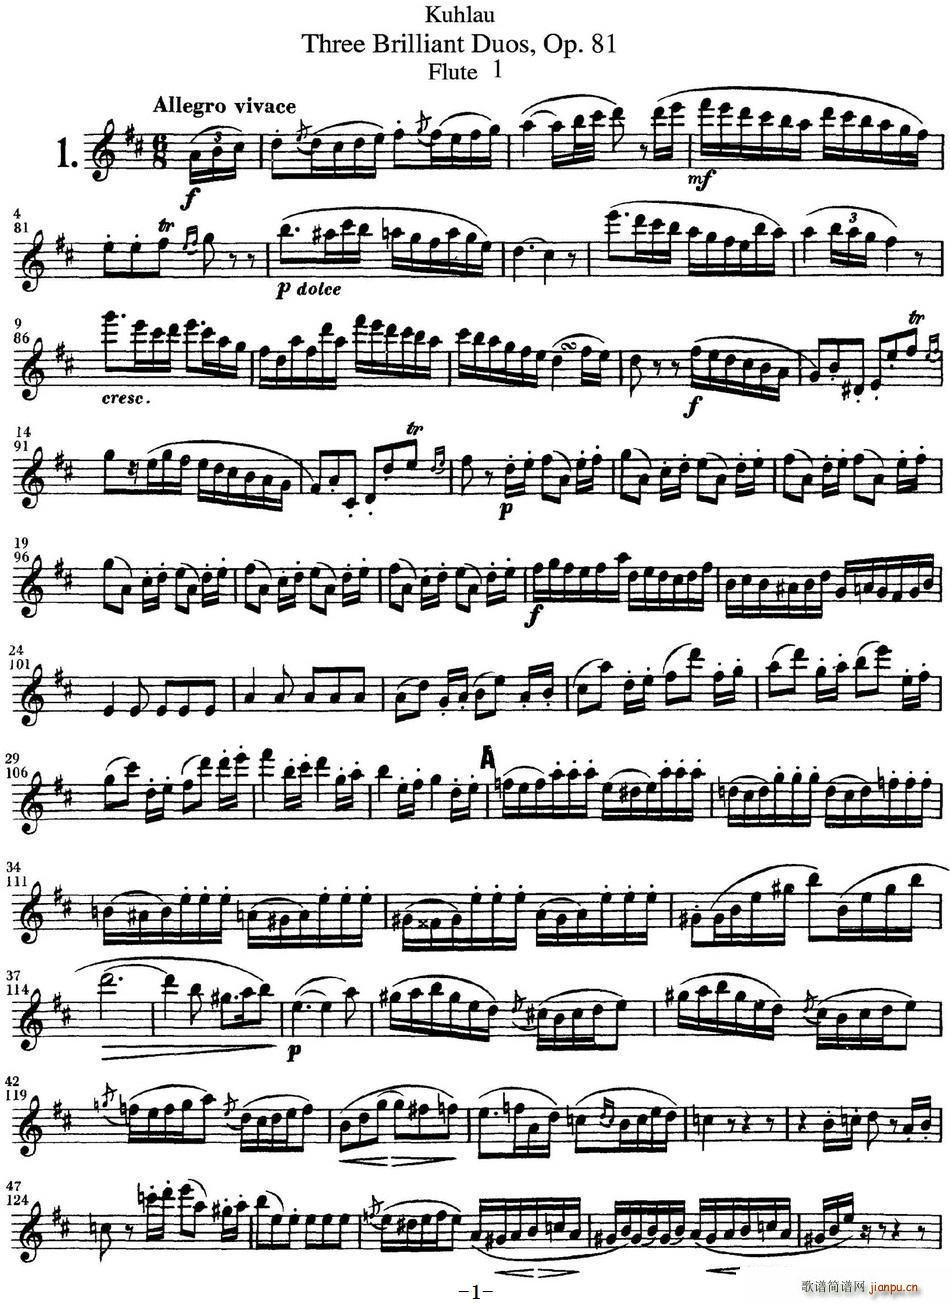 ͳѶϰOP 81 Flute 1 NO 1()1